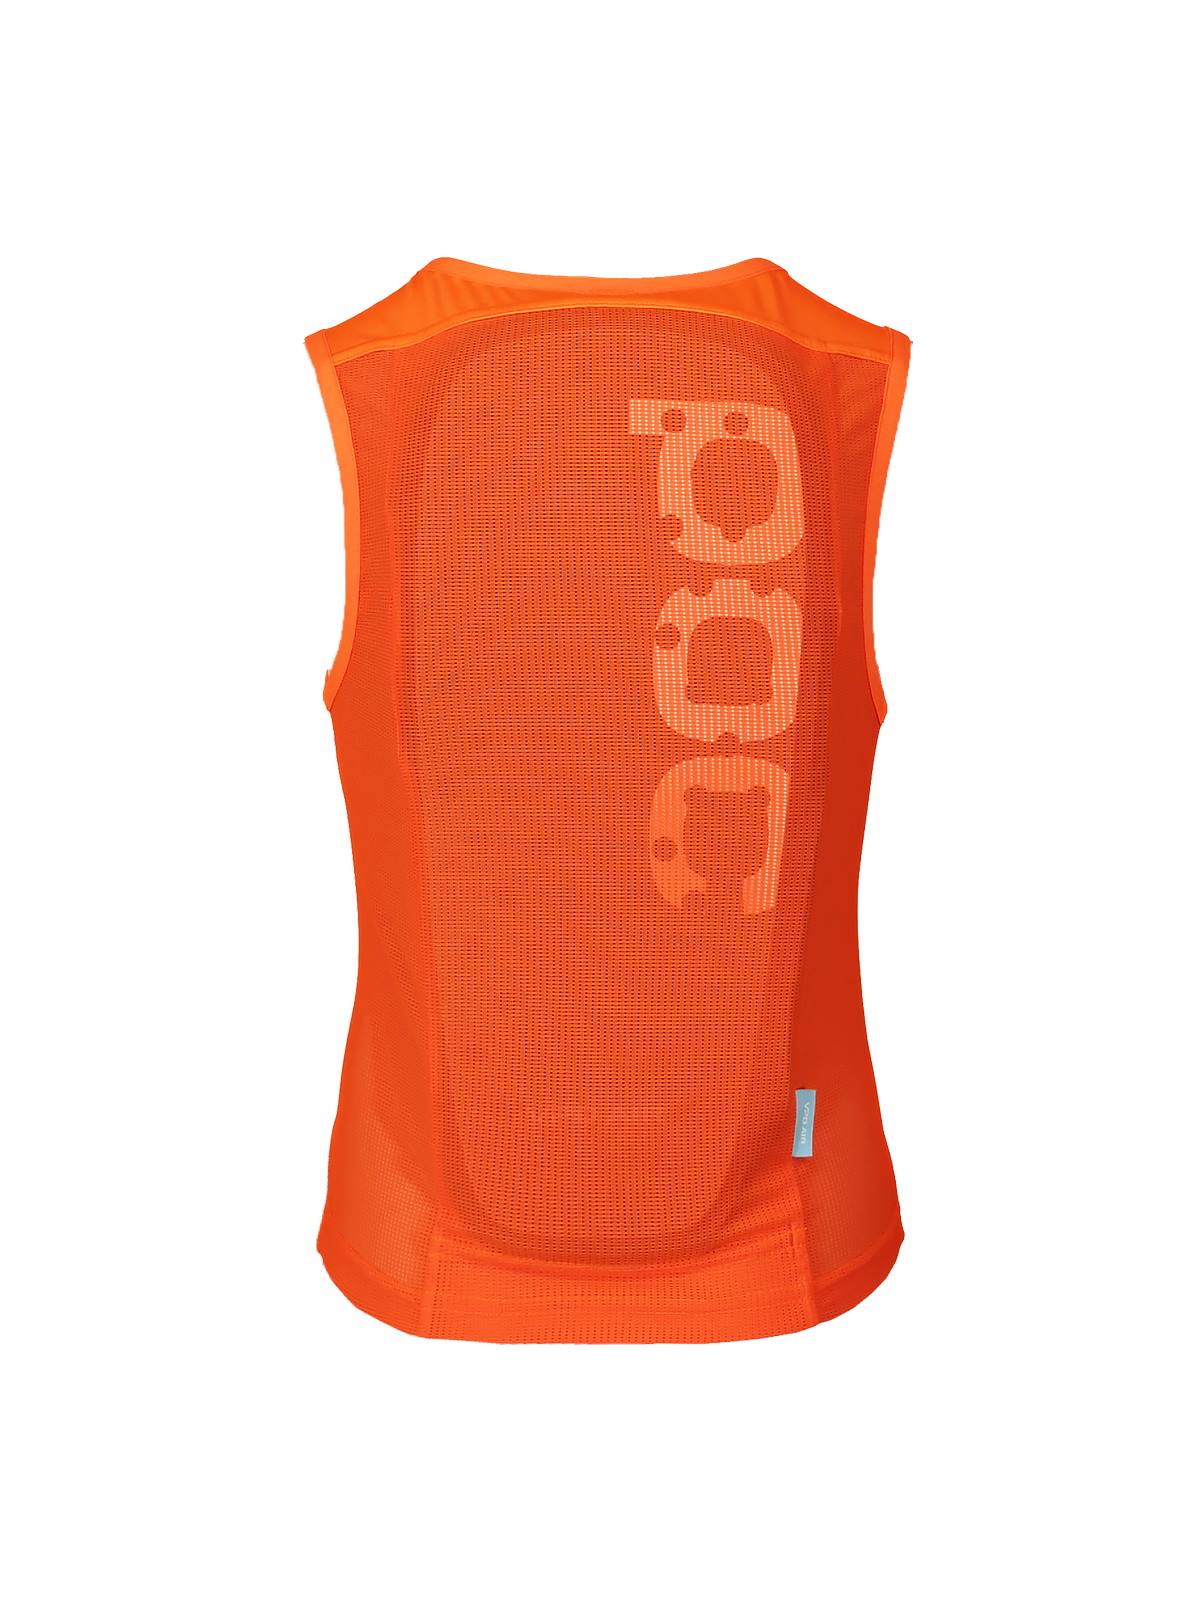 Kamizelka ochronna POCITO VPD AIR Vest - Fluo. Orange